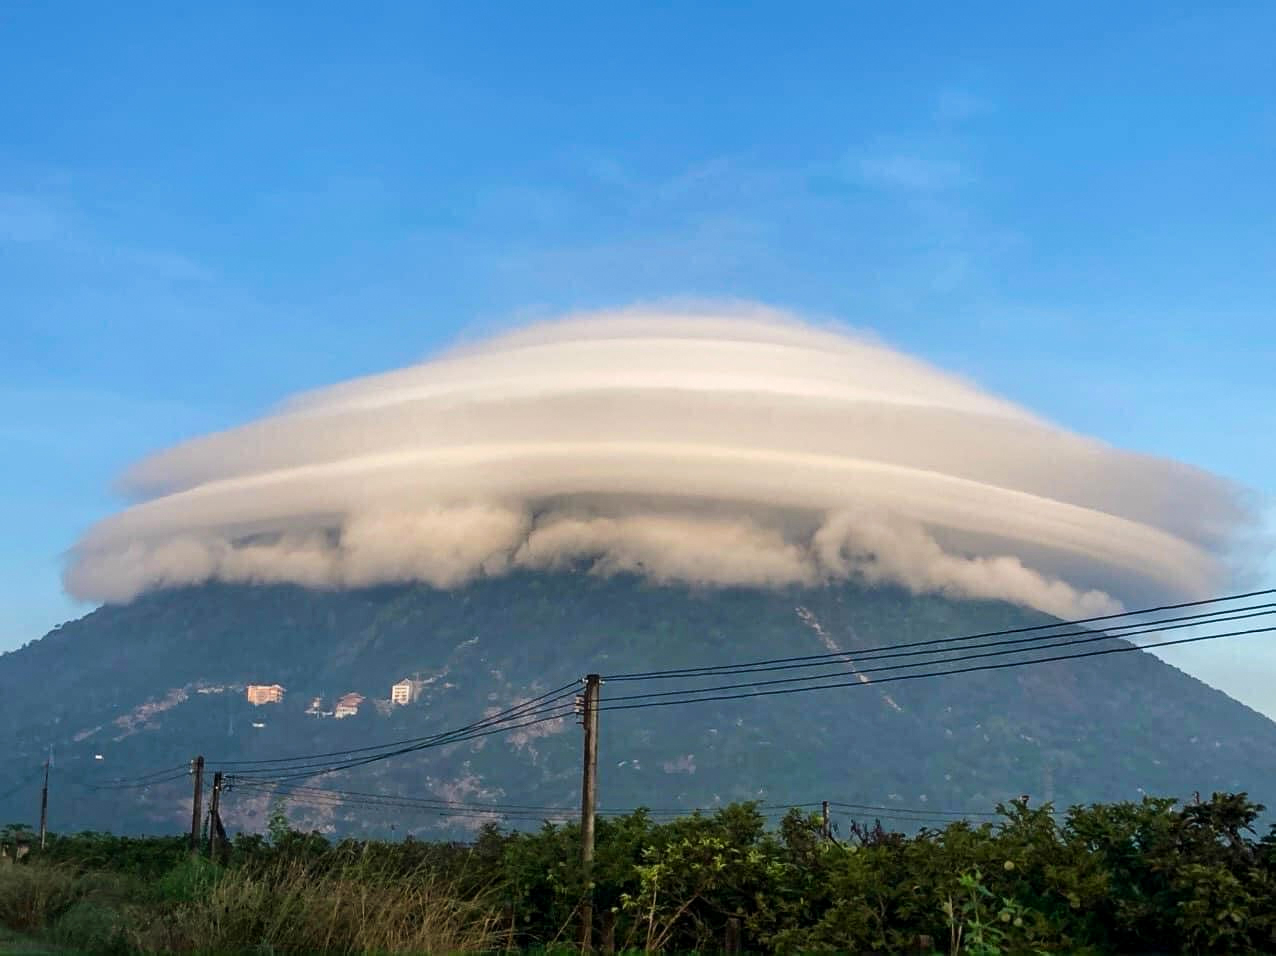 Từng xuất hiện tại Việt Nam trước đây, loại mây kỳ lạ có hình dạng như đĩa bay tiếp tục lộ diện tại Thổ Nhĩ Kì - Ảnh 3.